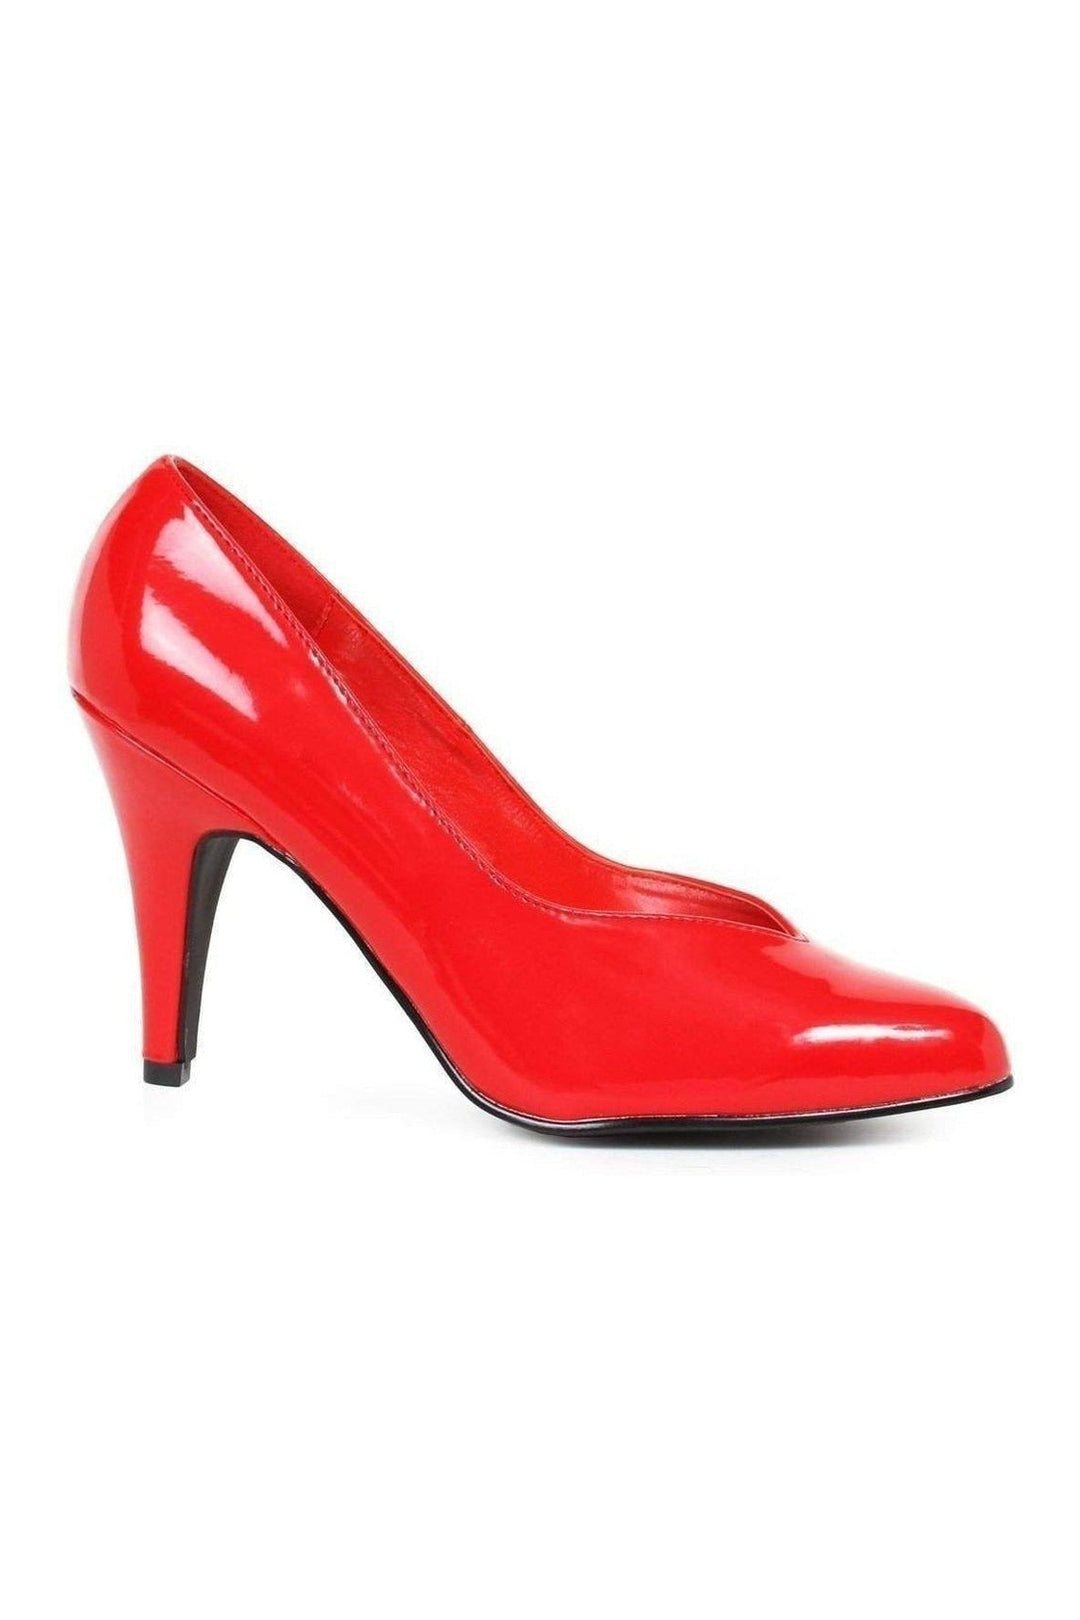 8240-D Pump | Red Patent-Ellie Shoes-SEXYSHOES.COM